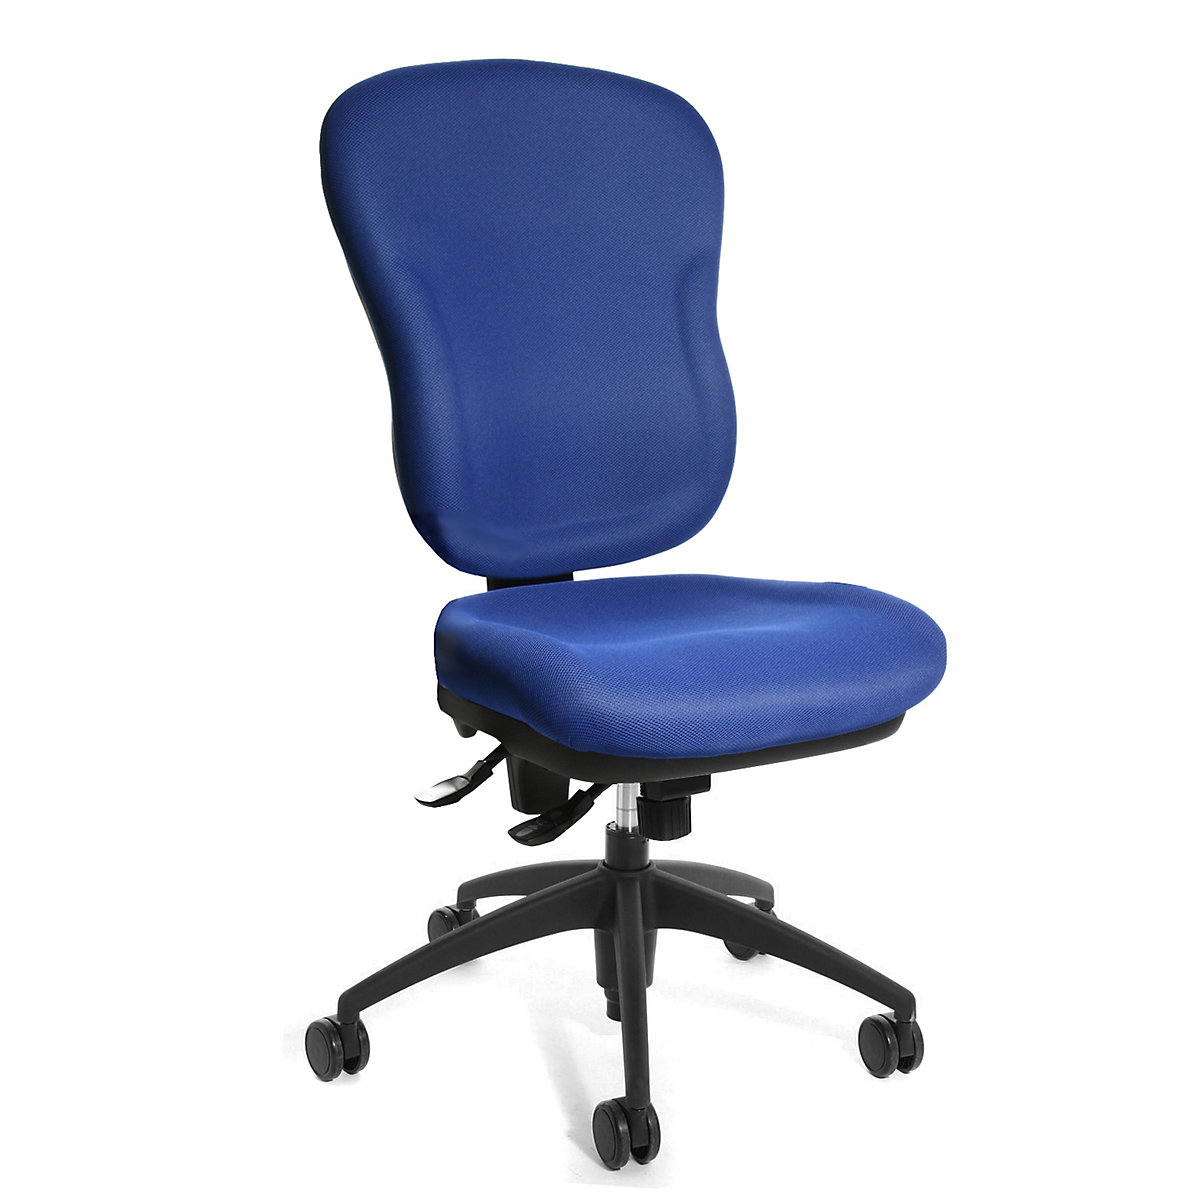 Kantoordraaistoel WELLPOINT 30 SY – Topstar, stoel met hoge rug en gegoten schuimstofbekleding, blauw-4